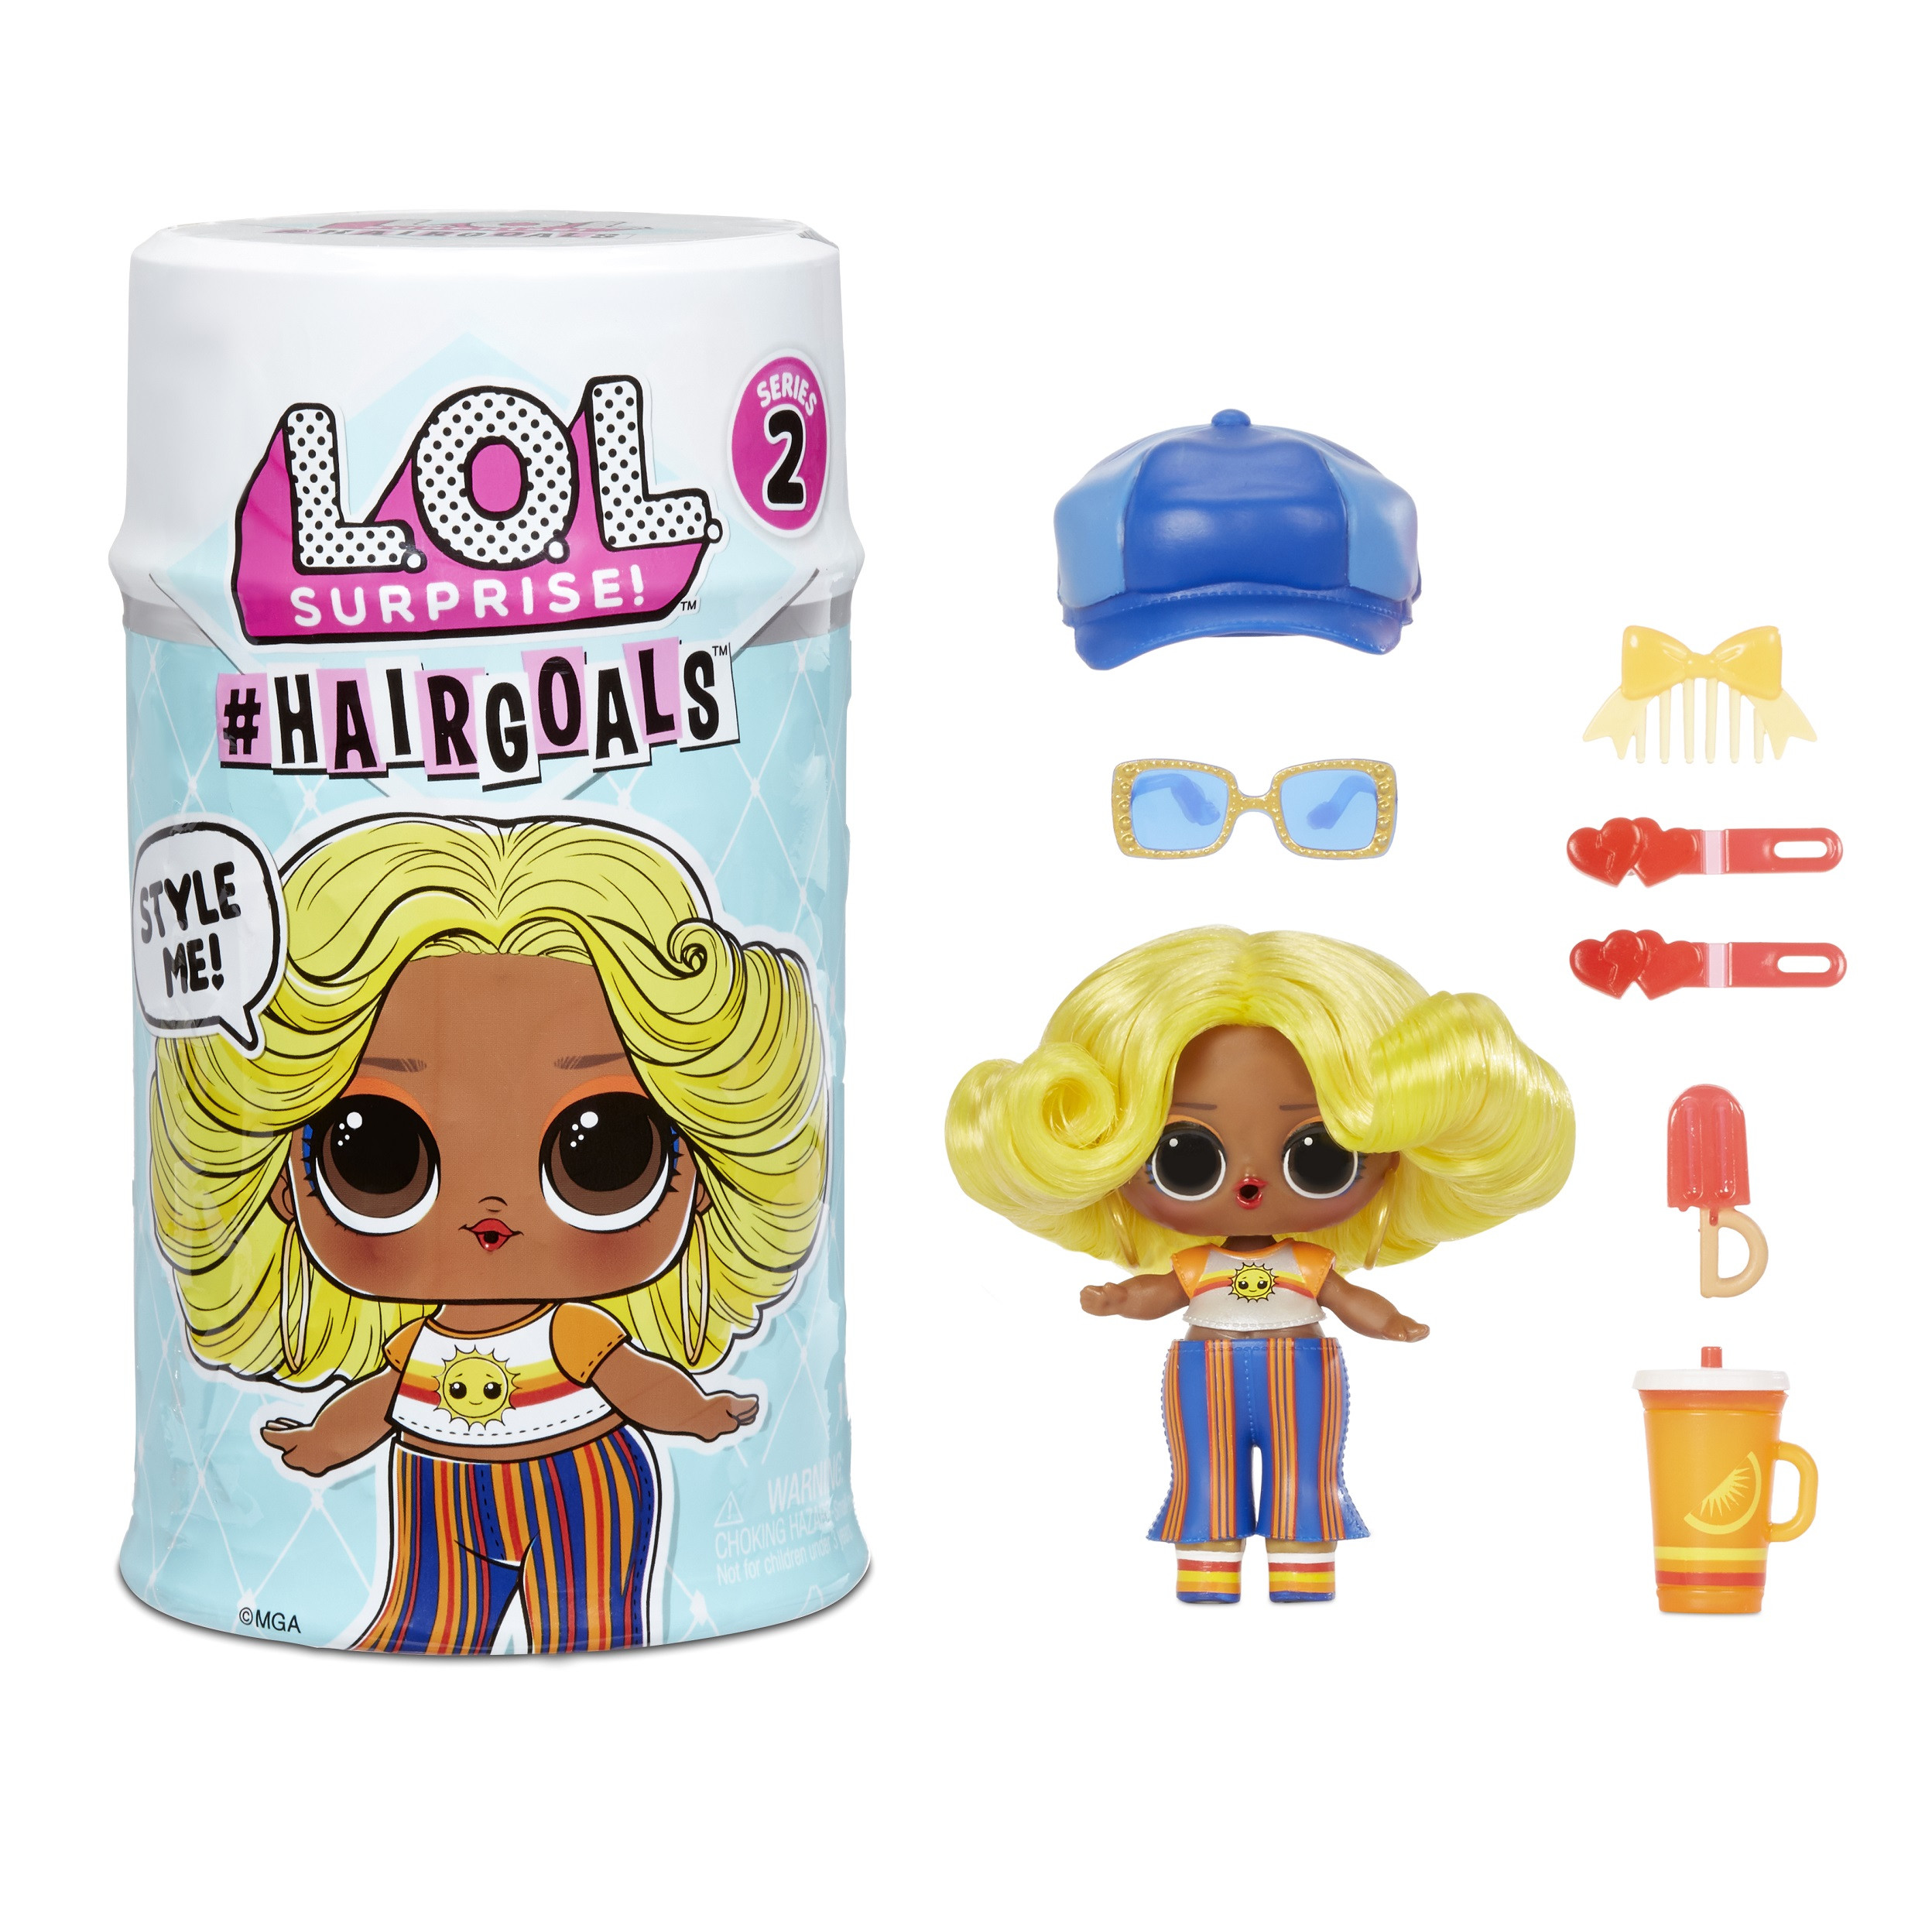 L.O.L Surprise Hairgoals 2.0